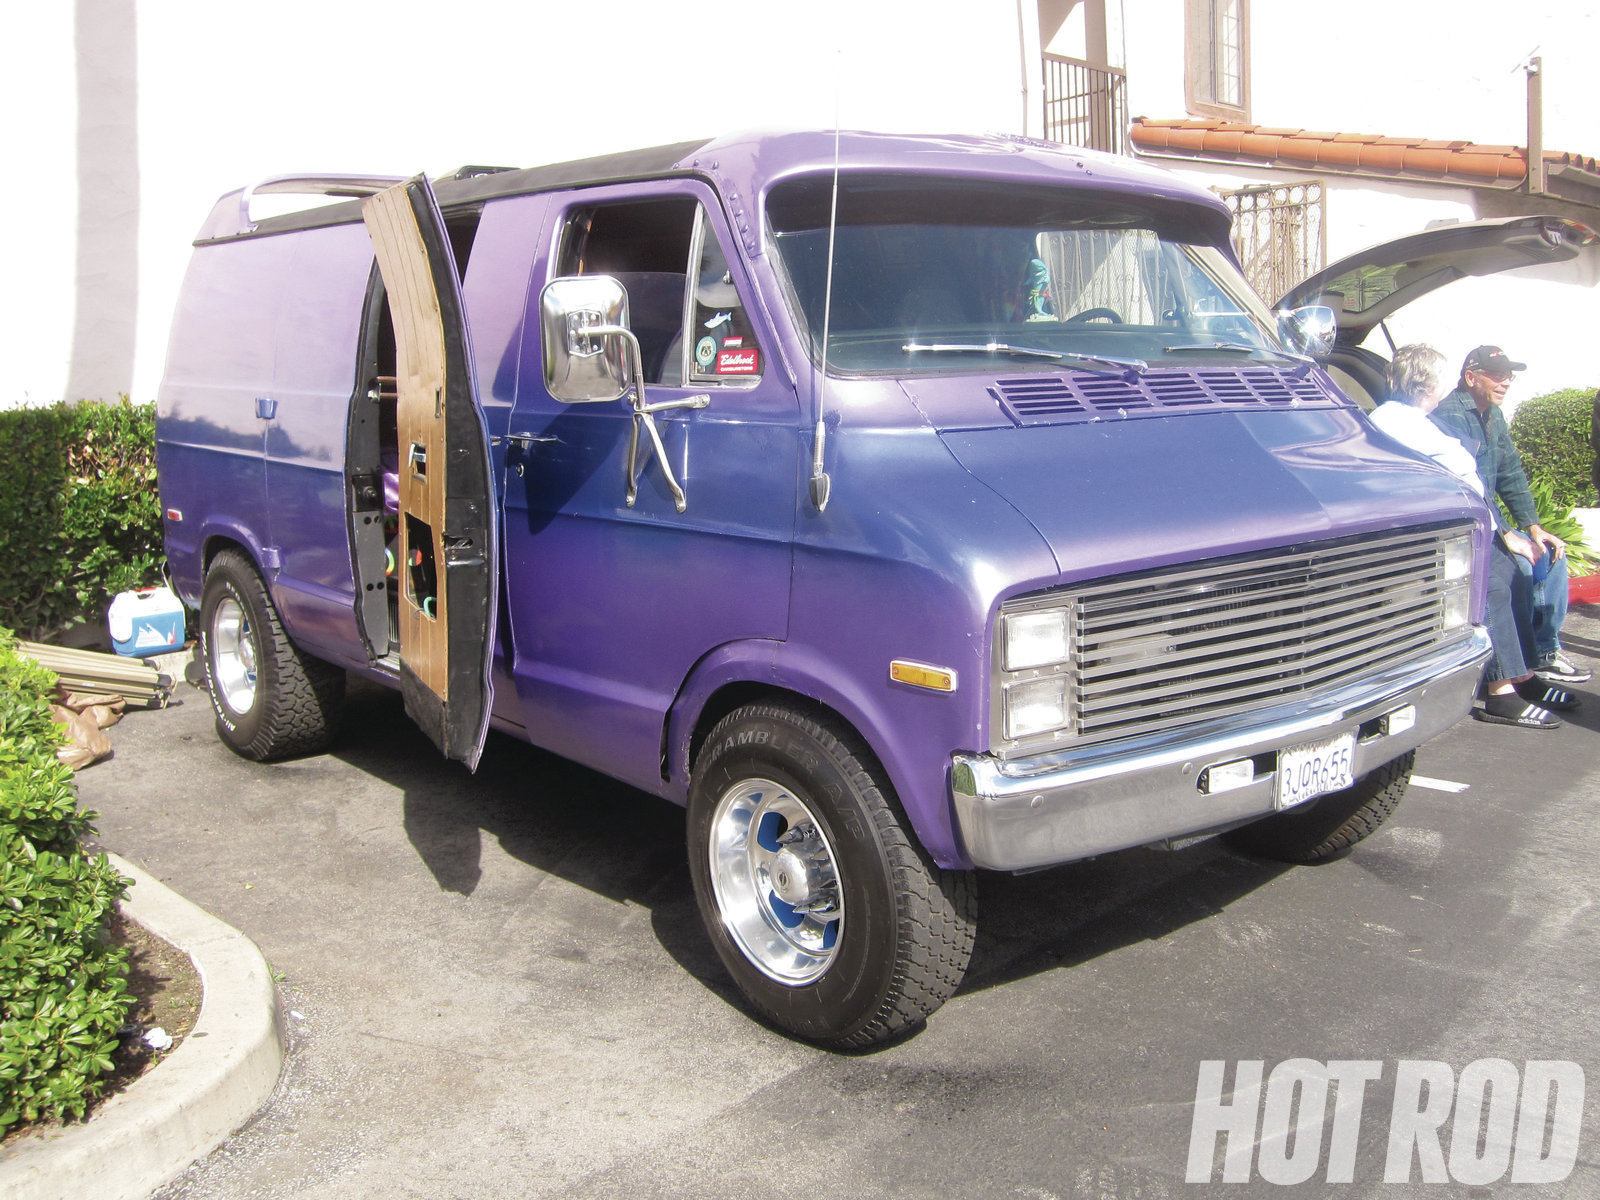 hrdp-1107-14-custom-vans.jpg